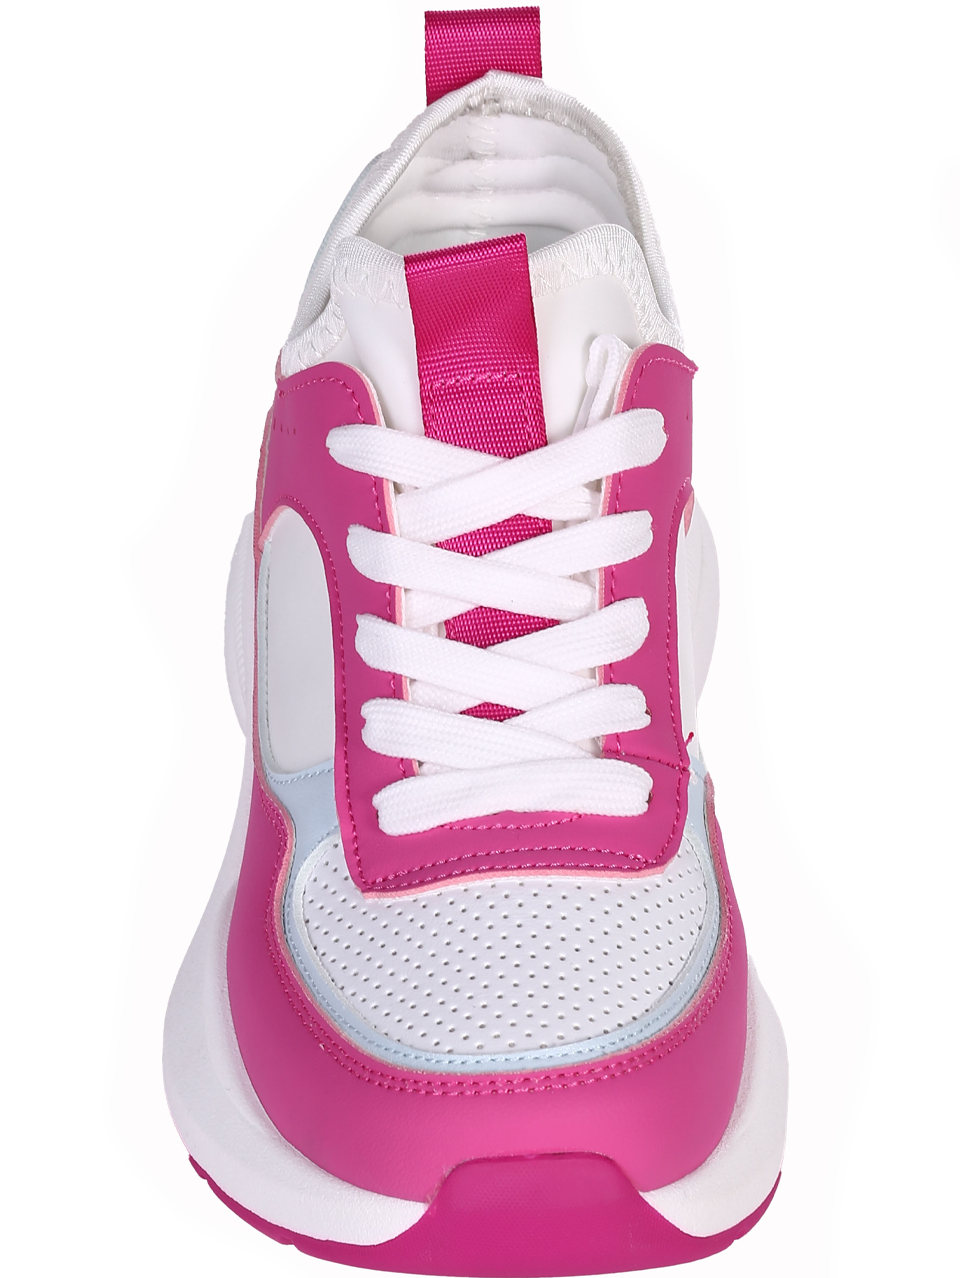 Ежедневни дамски обувки в цвят фуксия 3U-24091 fuchsia